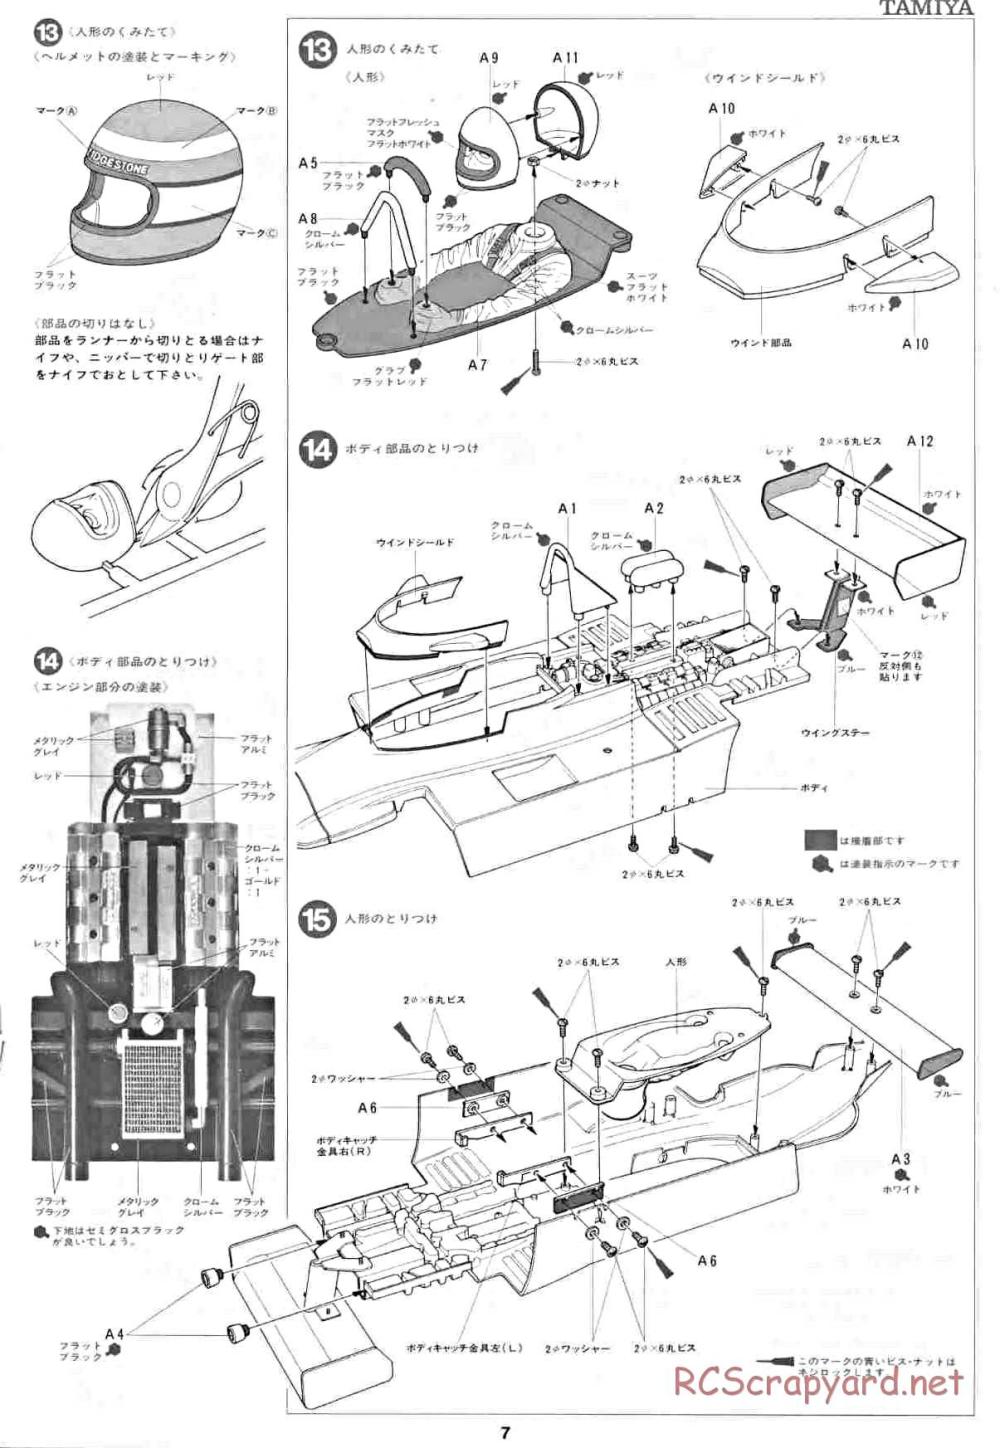 Tamiya - Honda F2 (CS) - 58030 - Manual - Page 7